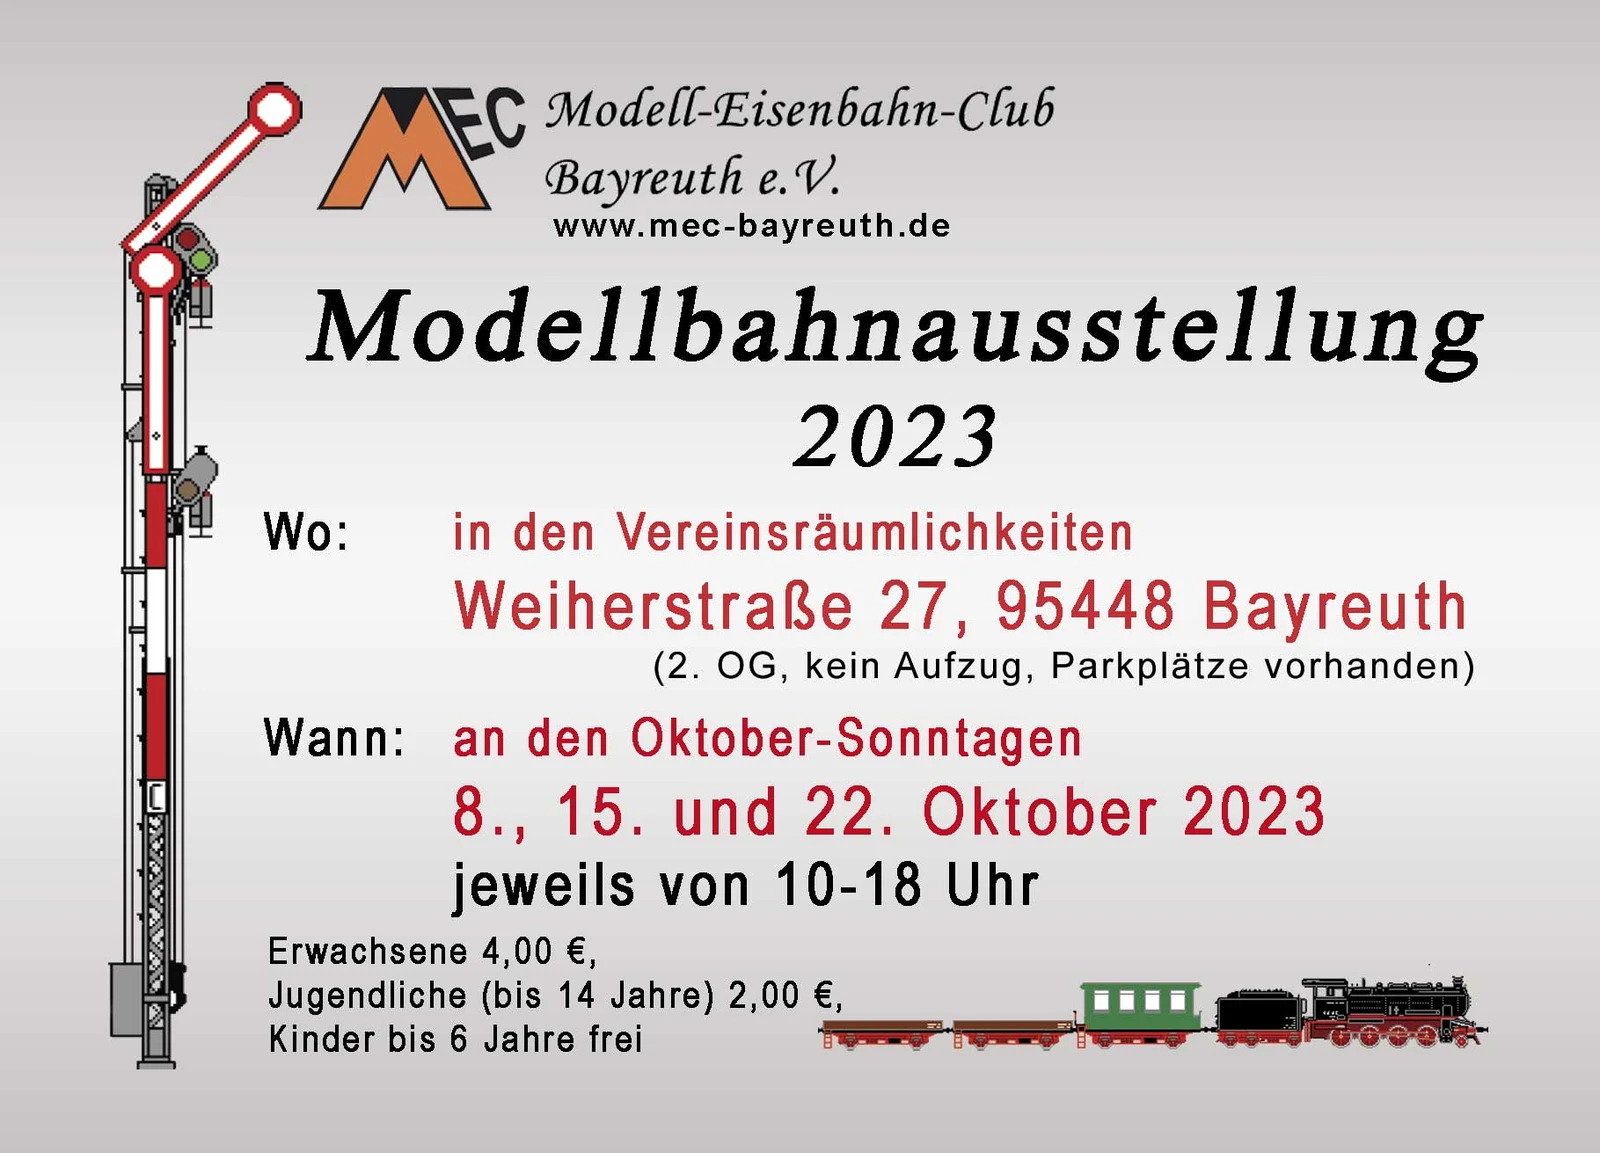 Bayreuth, Modellbahnausstellung, 8., 15. und 22. Oktober 2023